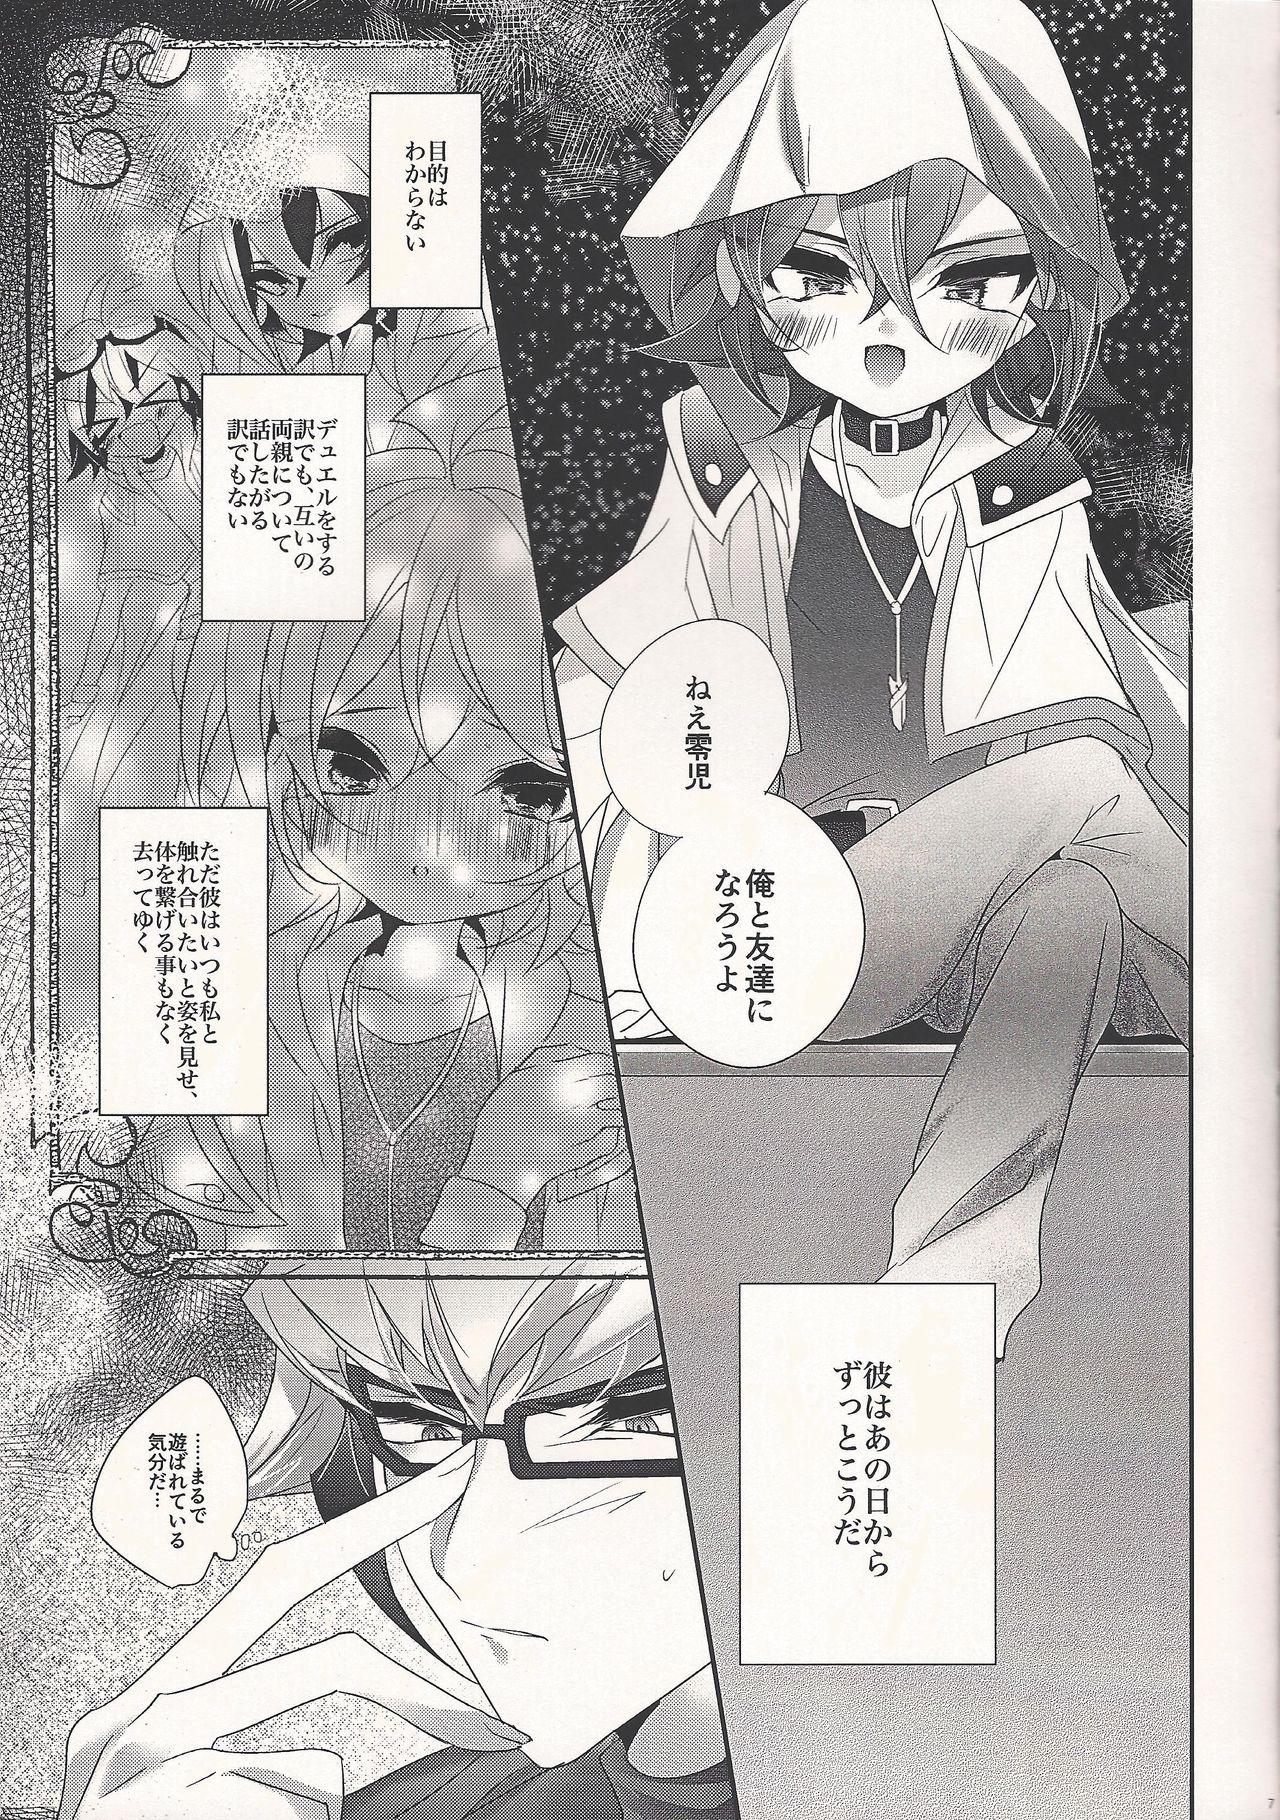 Gayhardcore Fantomu-sama no ××× - Yu-gi-oh arc-v Pickup - Page 7